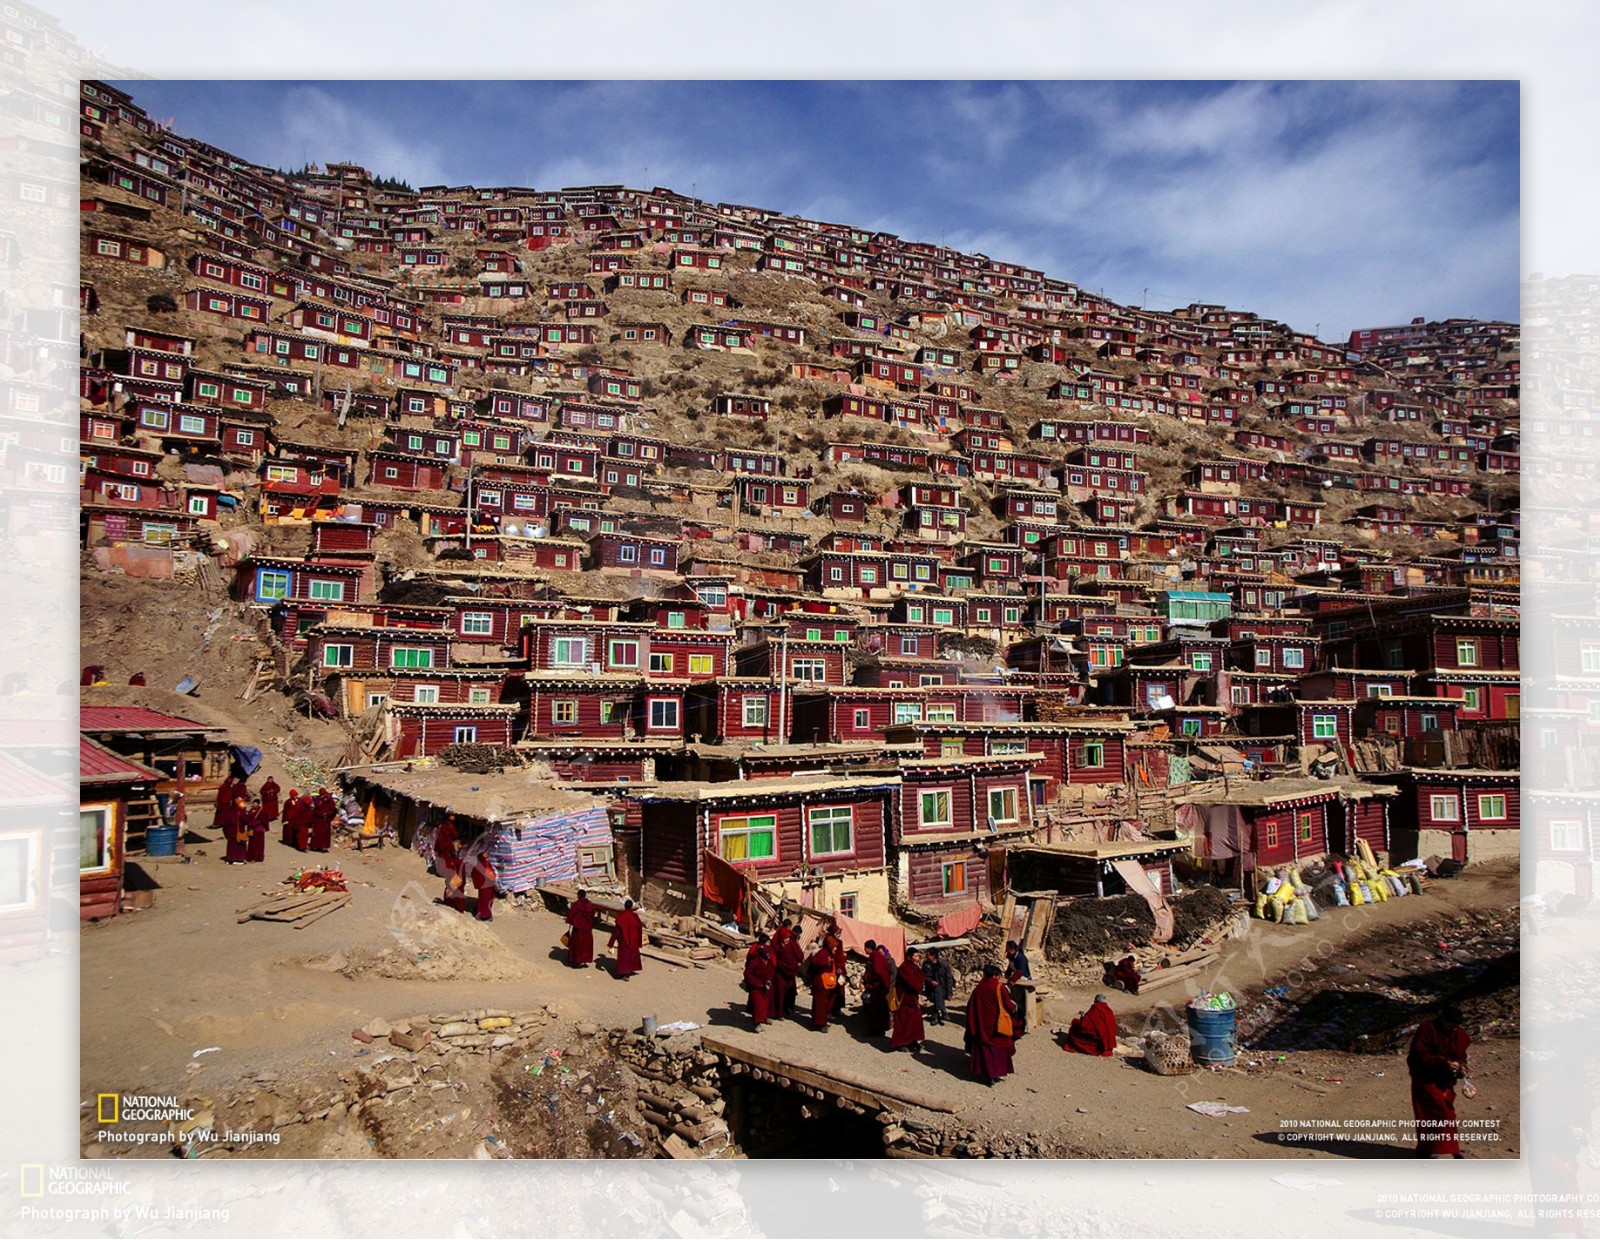 西藏喇嘛居住区图片